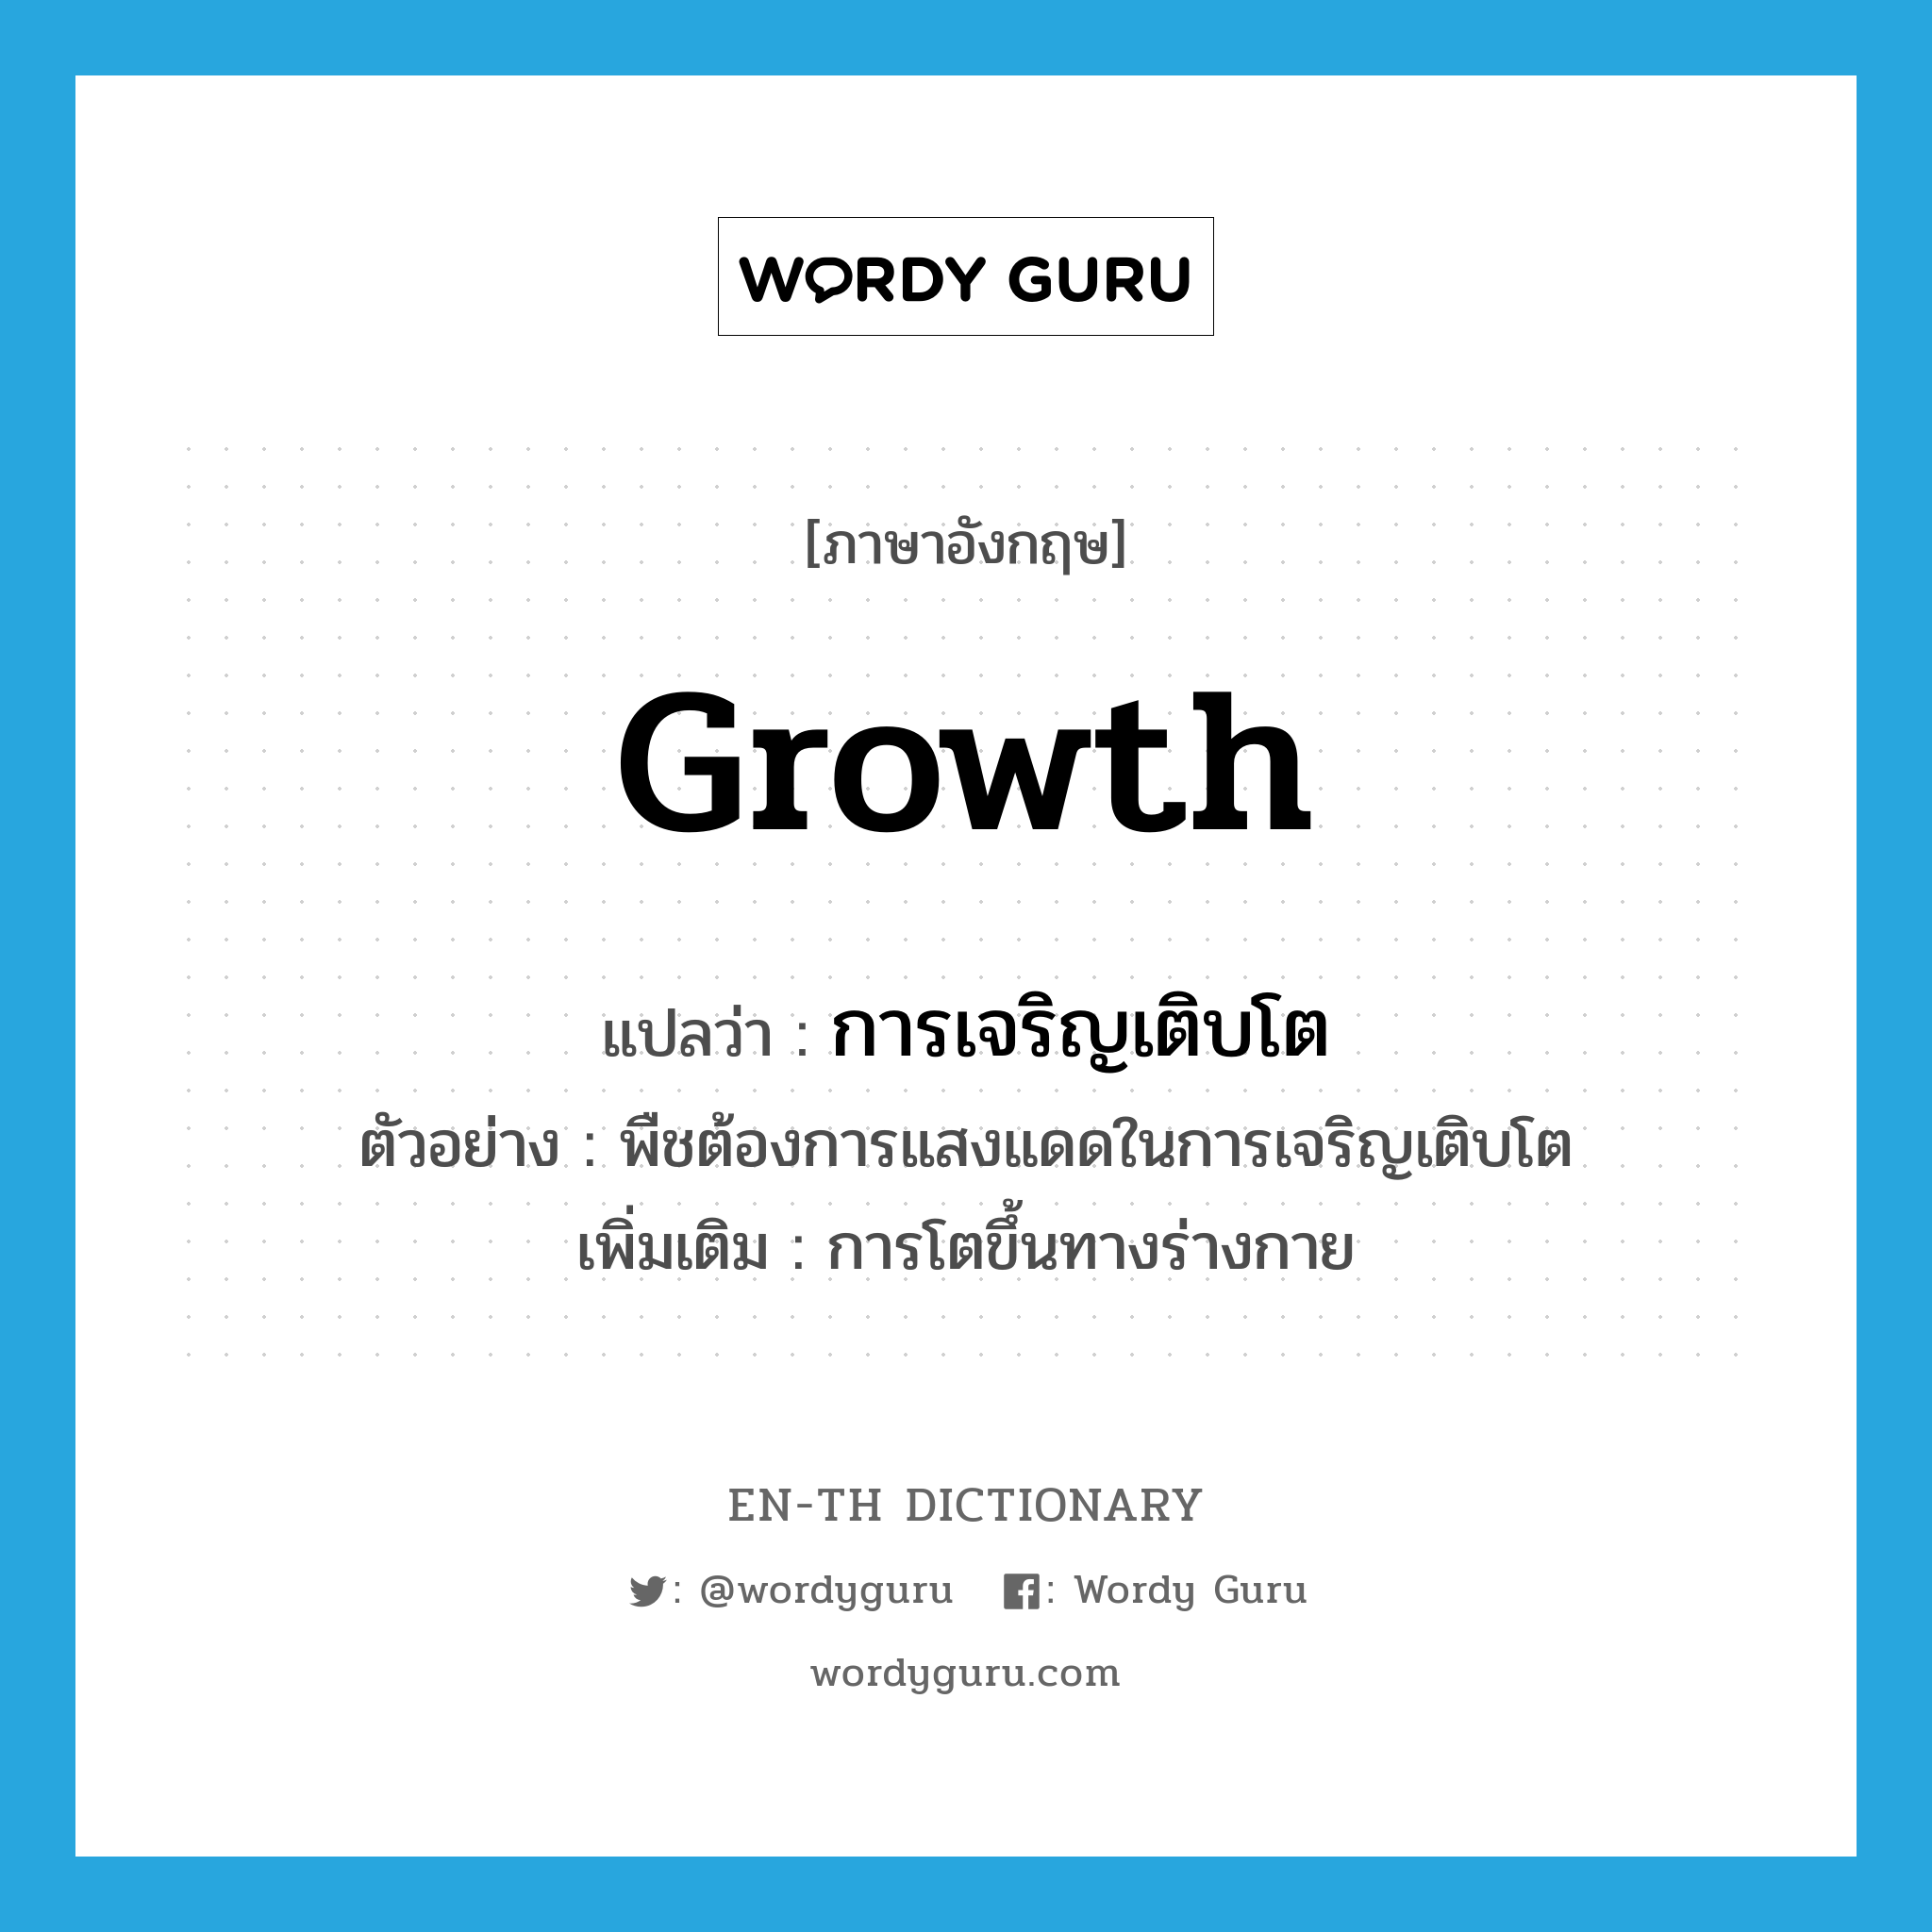 การเจริญเติบโต ภาษาอังกฤษ?, คำศัพท์ภาษาอังกฤษ การเจริญเติบโต แปลว่า growth ประเภท N ตัวอย่าง พืชต้องการแสงแดดในการเจริญเติบโต เพิ่มเติม การโตขึ้นทางร่างกาย หมวด N